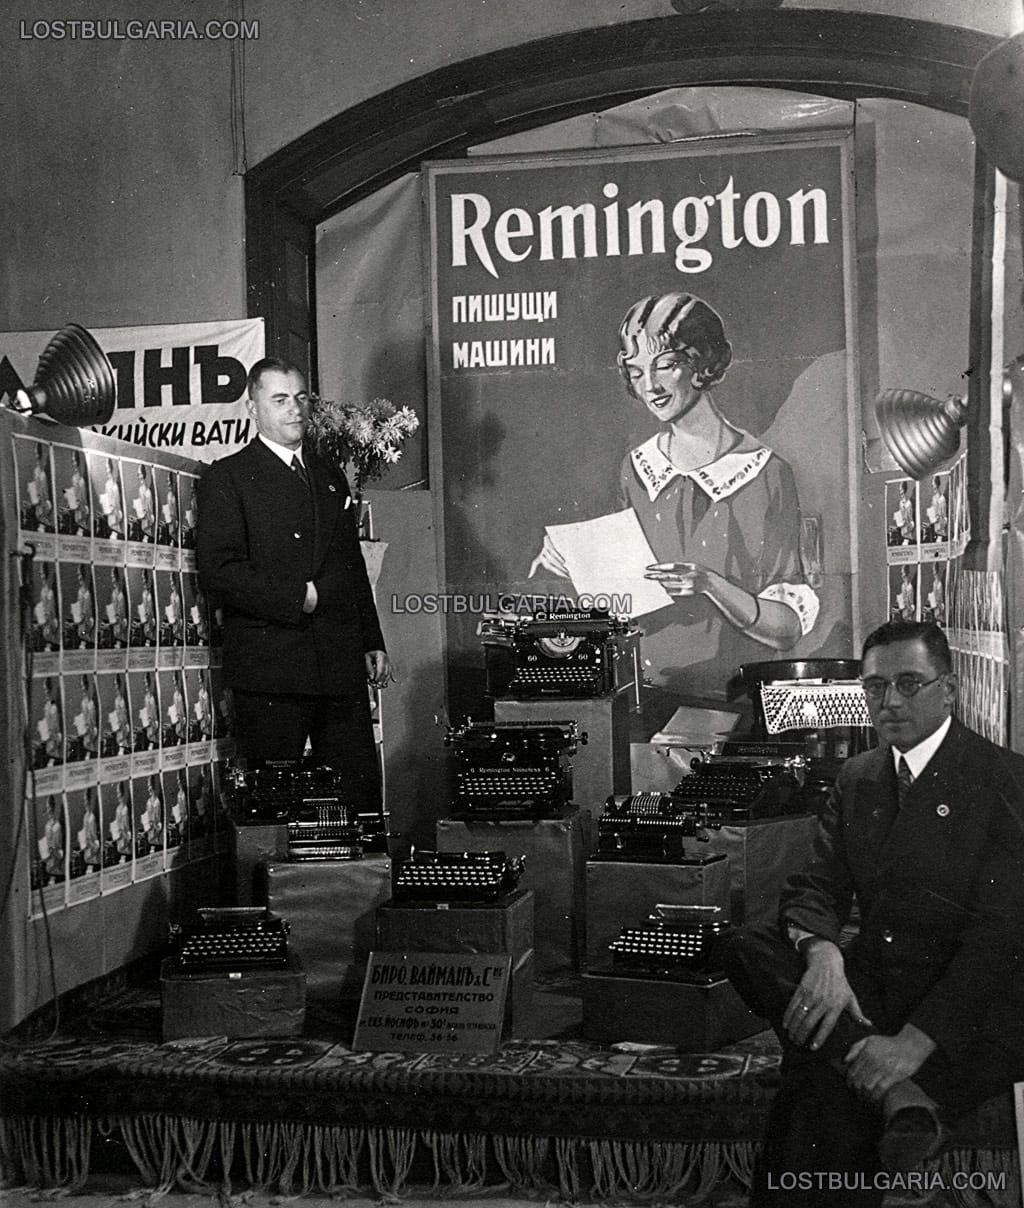 Щанд на представителството на вносители на пишещи машини "Ремингтон" (Remington), на търговско изложение, неизвестно къде, 30-те години на ХХ век